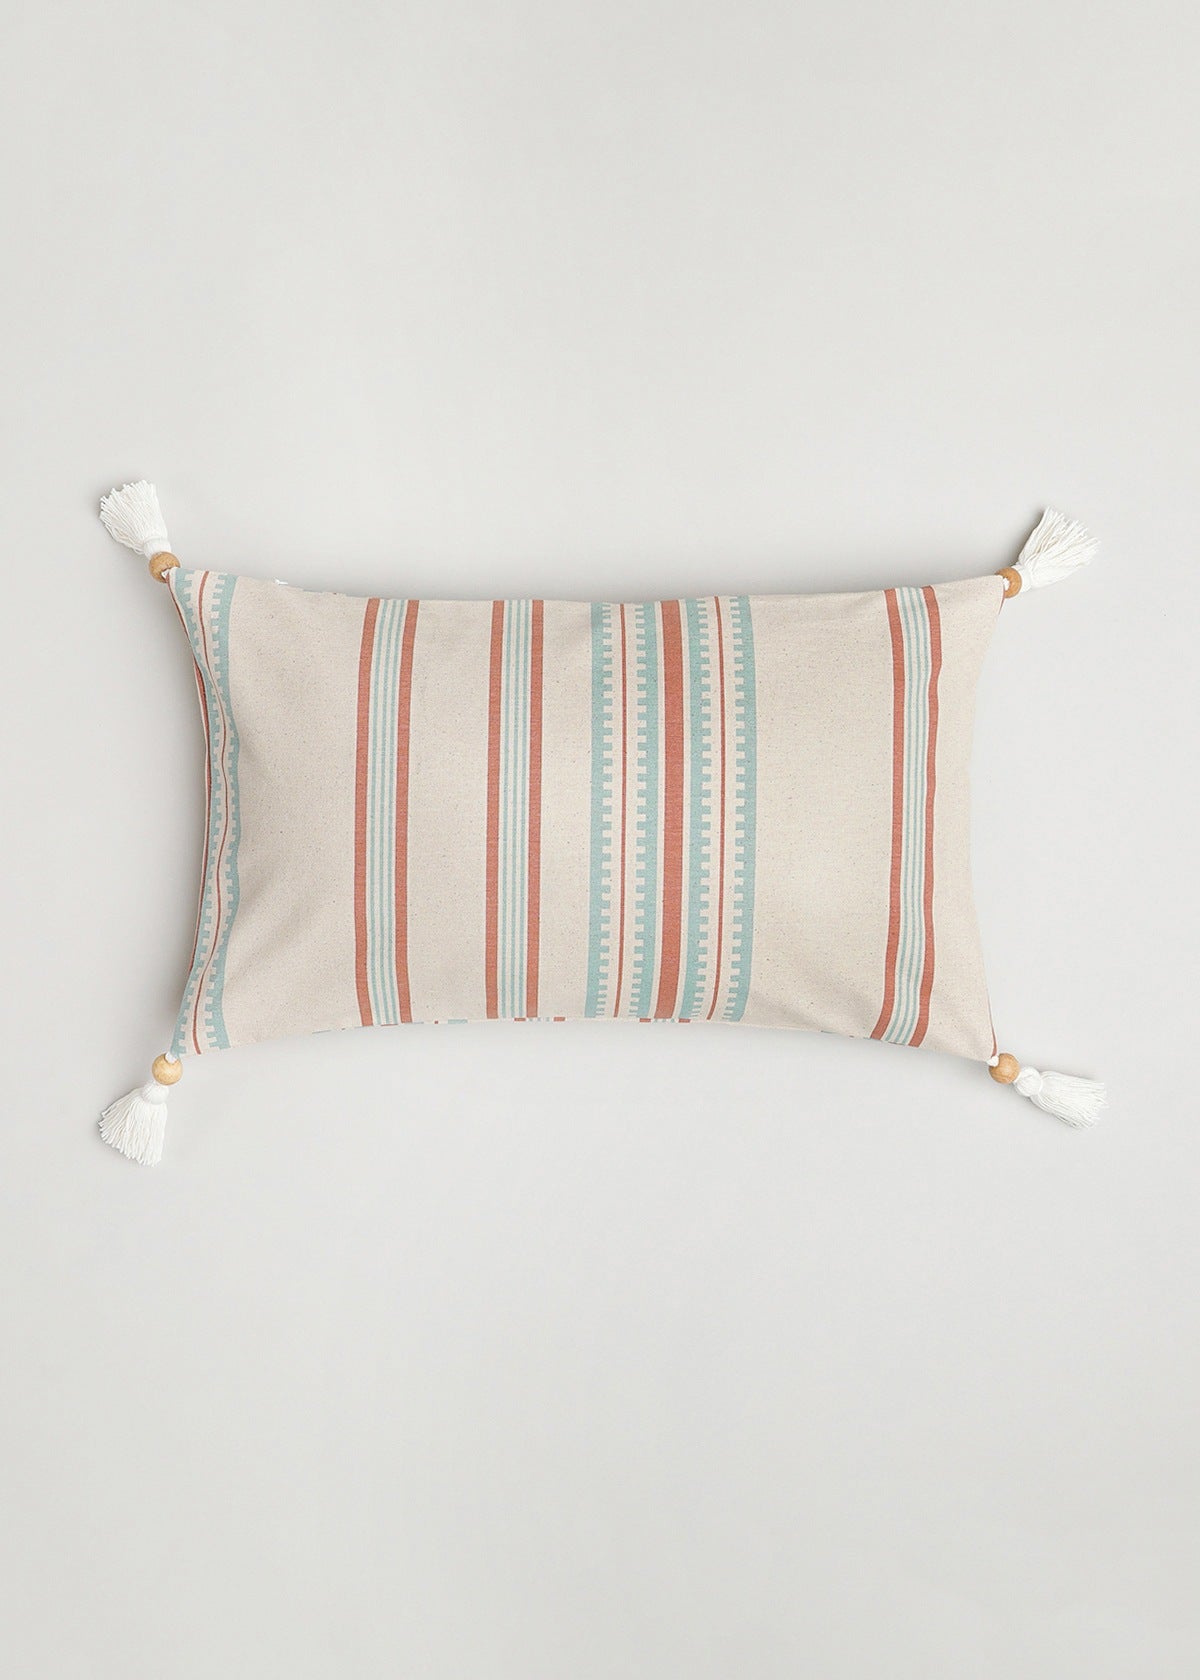 Roman Stripes Printed Cotton Cushion Cover - Multicolor